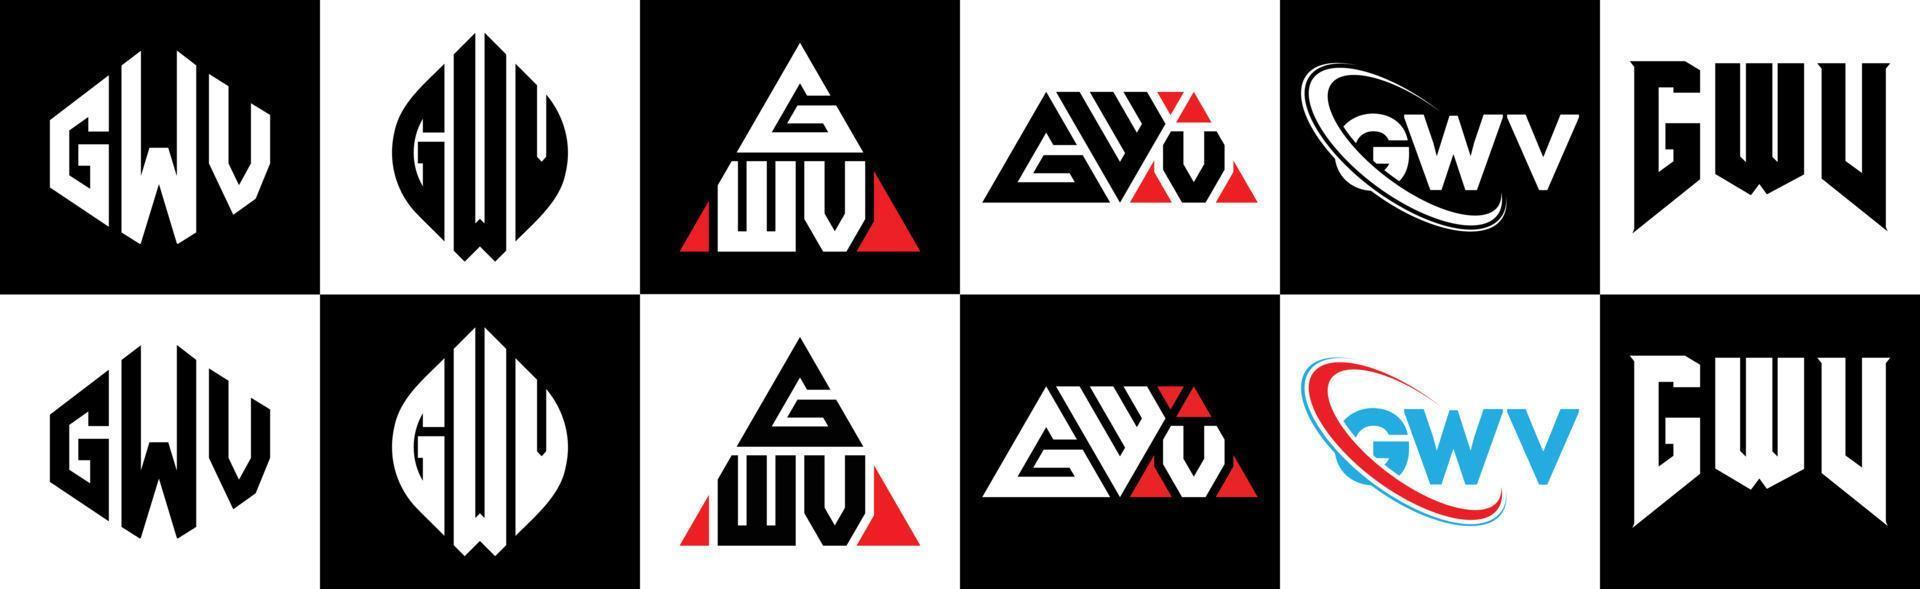 création de logo de lettre gwv en six styles. gwv polygone, cercle, triangle, hexagone, style plat et simple avec logo de lettre de variation de couleur noir et blanc dans un plan de travail. logo gwv minimaliste et classique vecteur